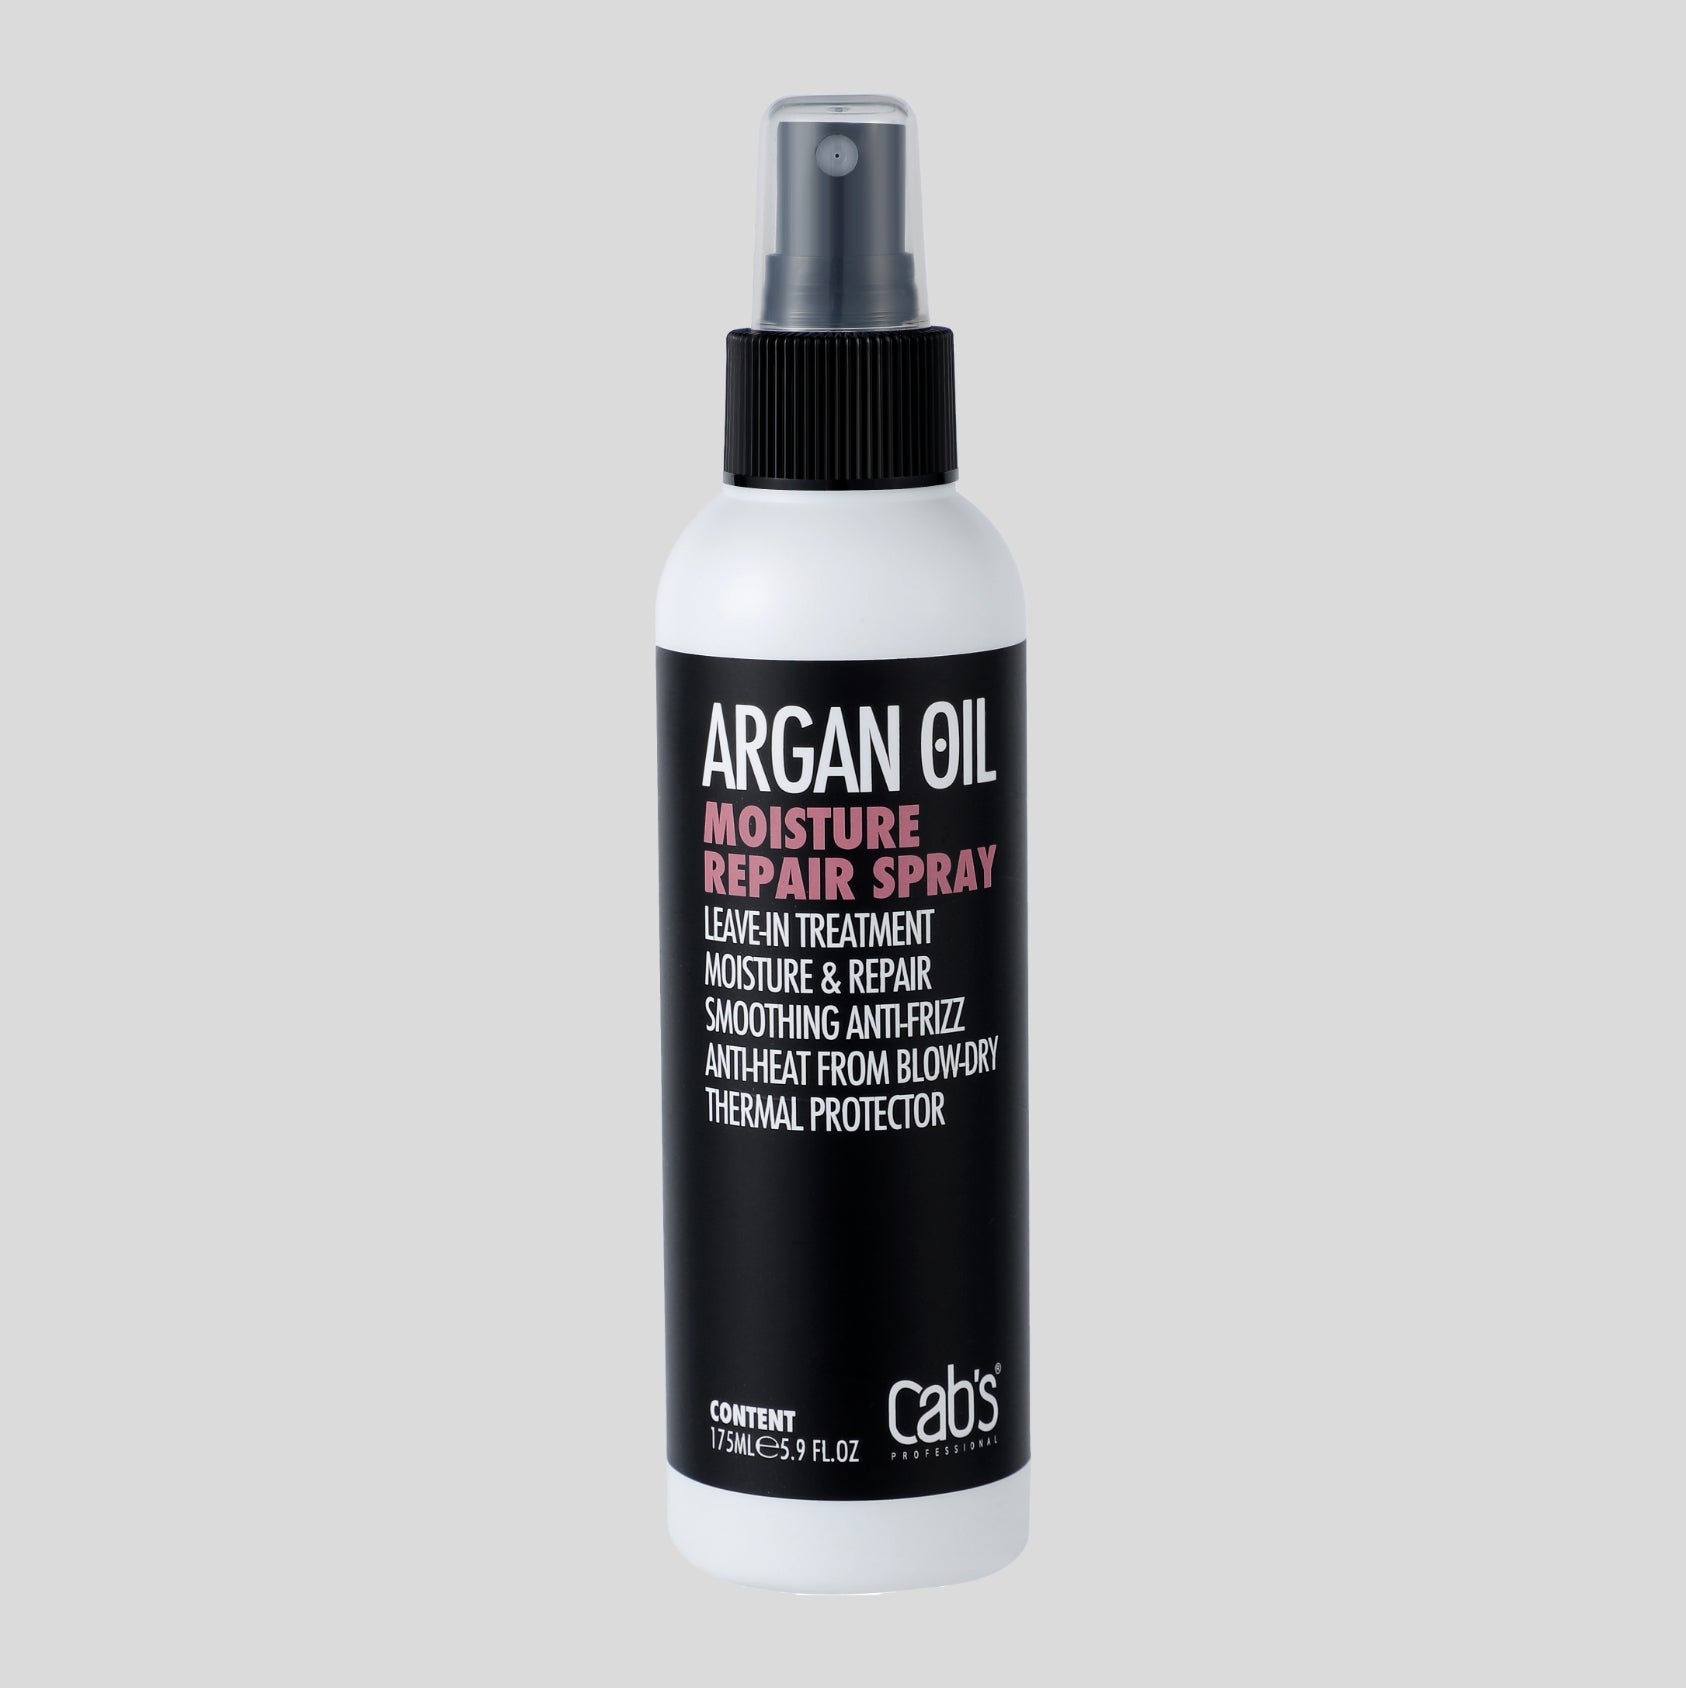 Argan Oil Moisture Repair Spray 061f8049 a017 453d 8940 aeeb56aa3530